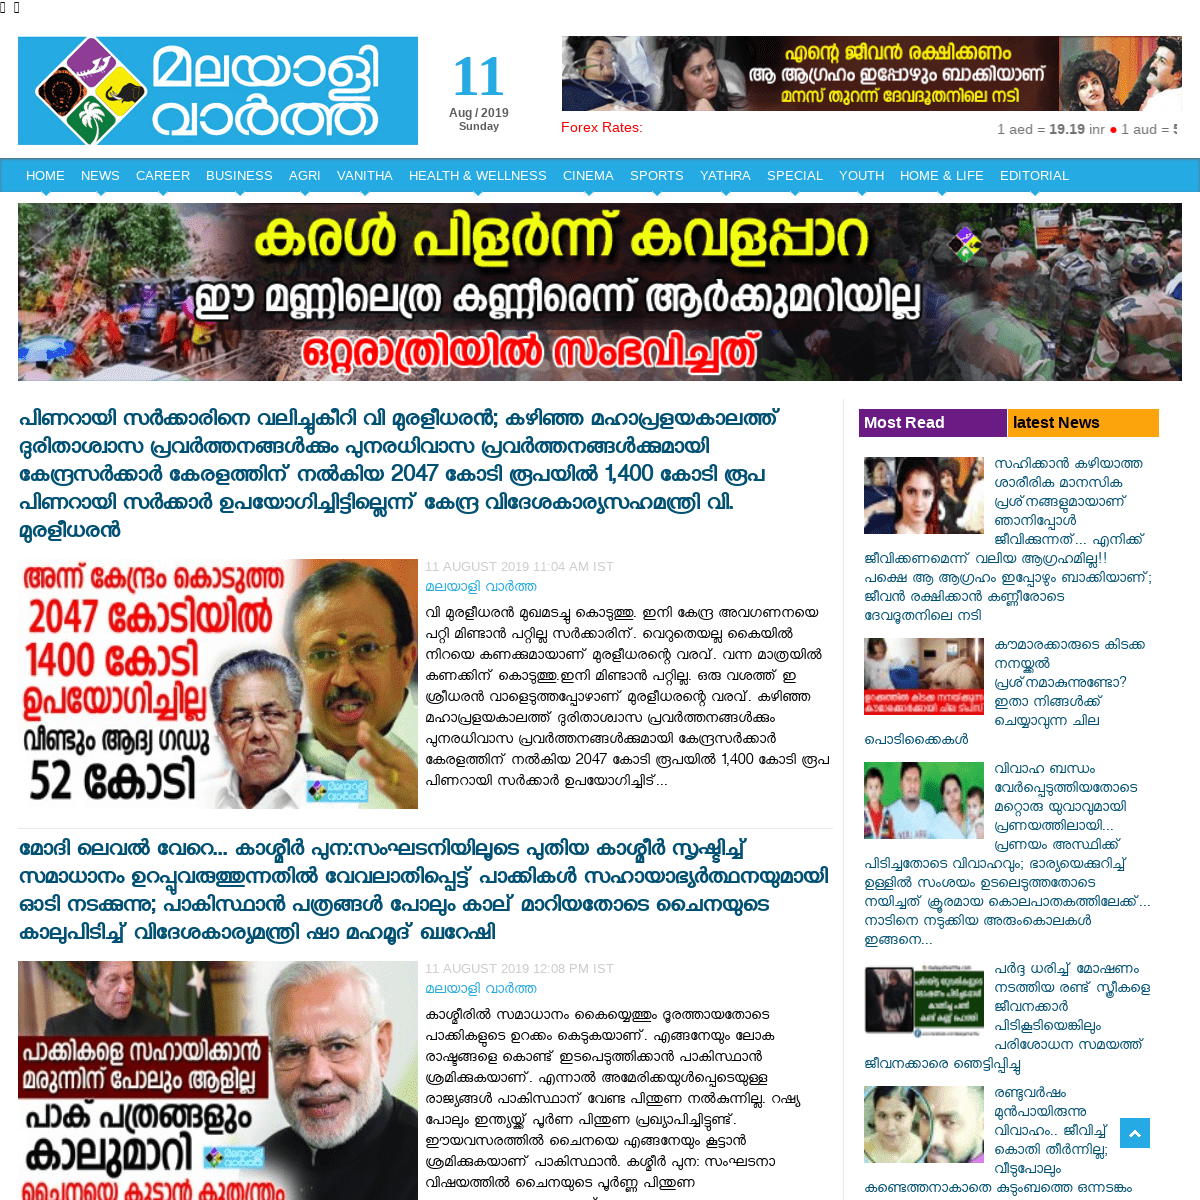 MALAYALIVARTHA.COM - Latest Kerala News Online, Malayalam News